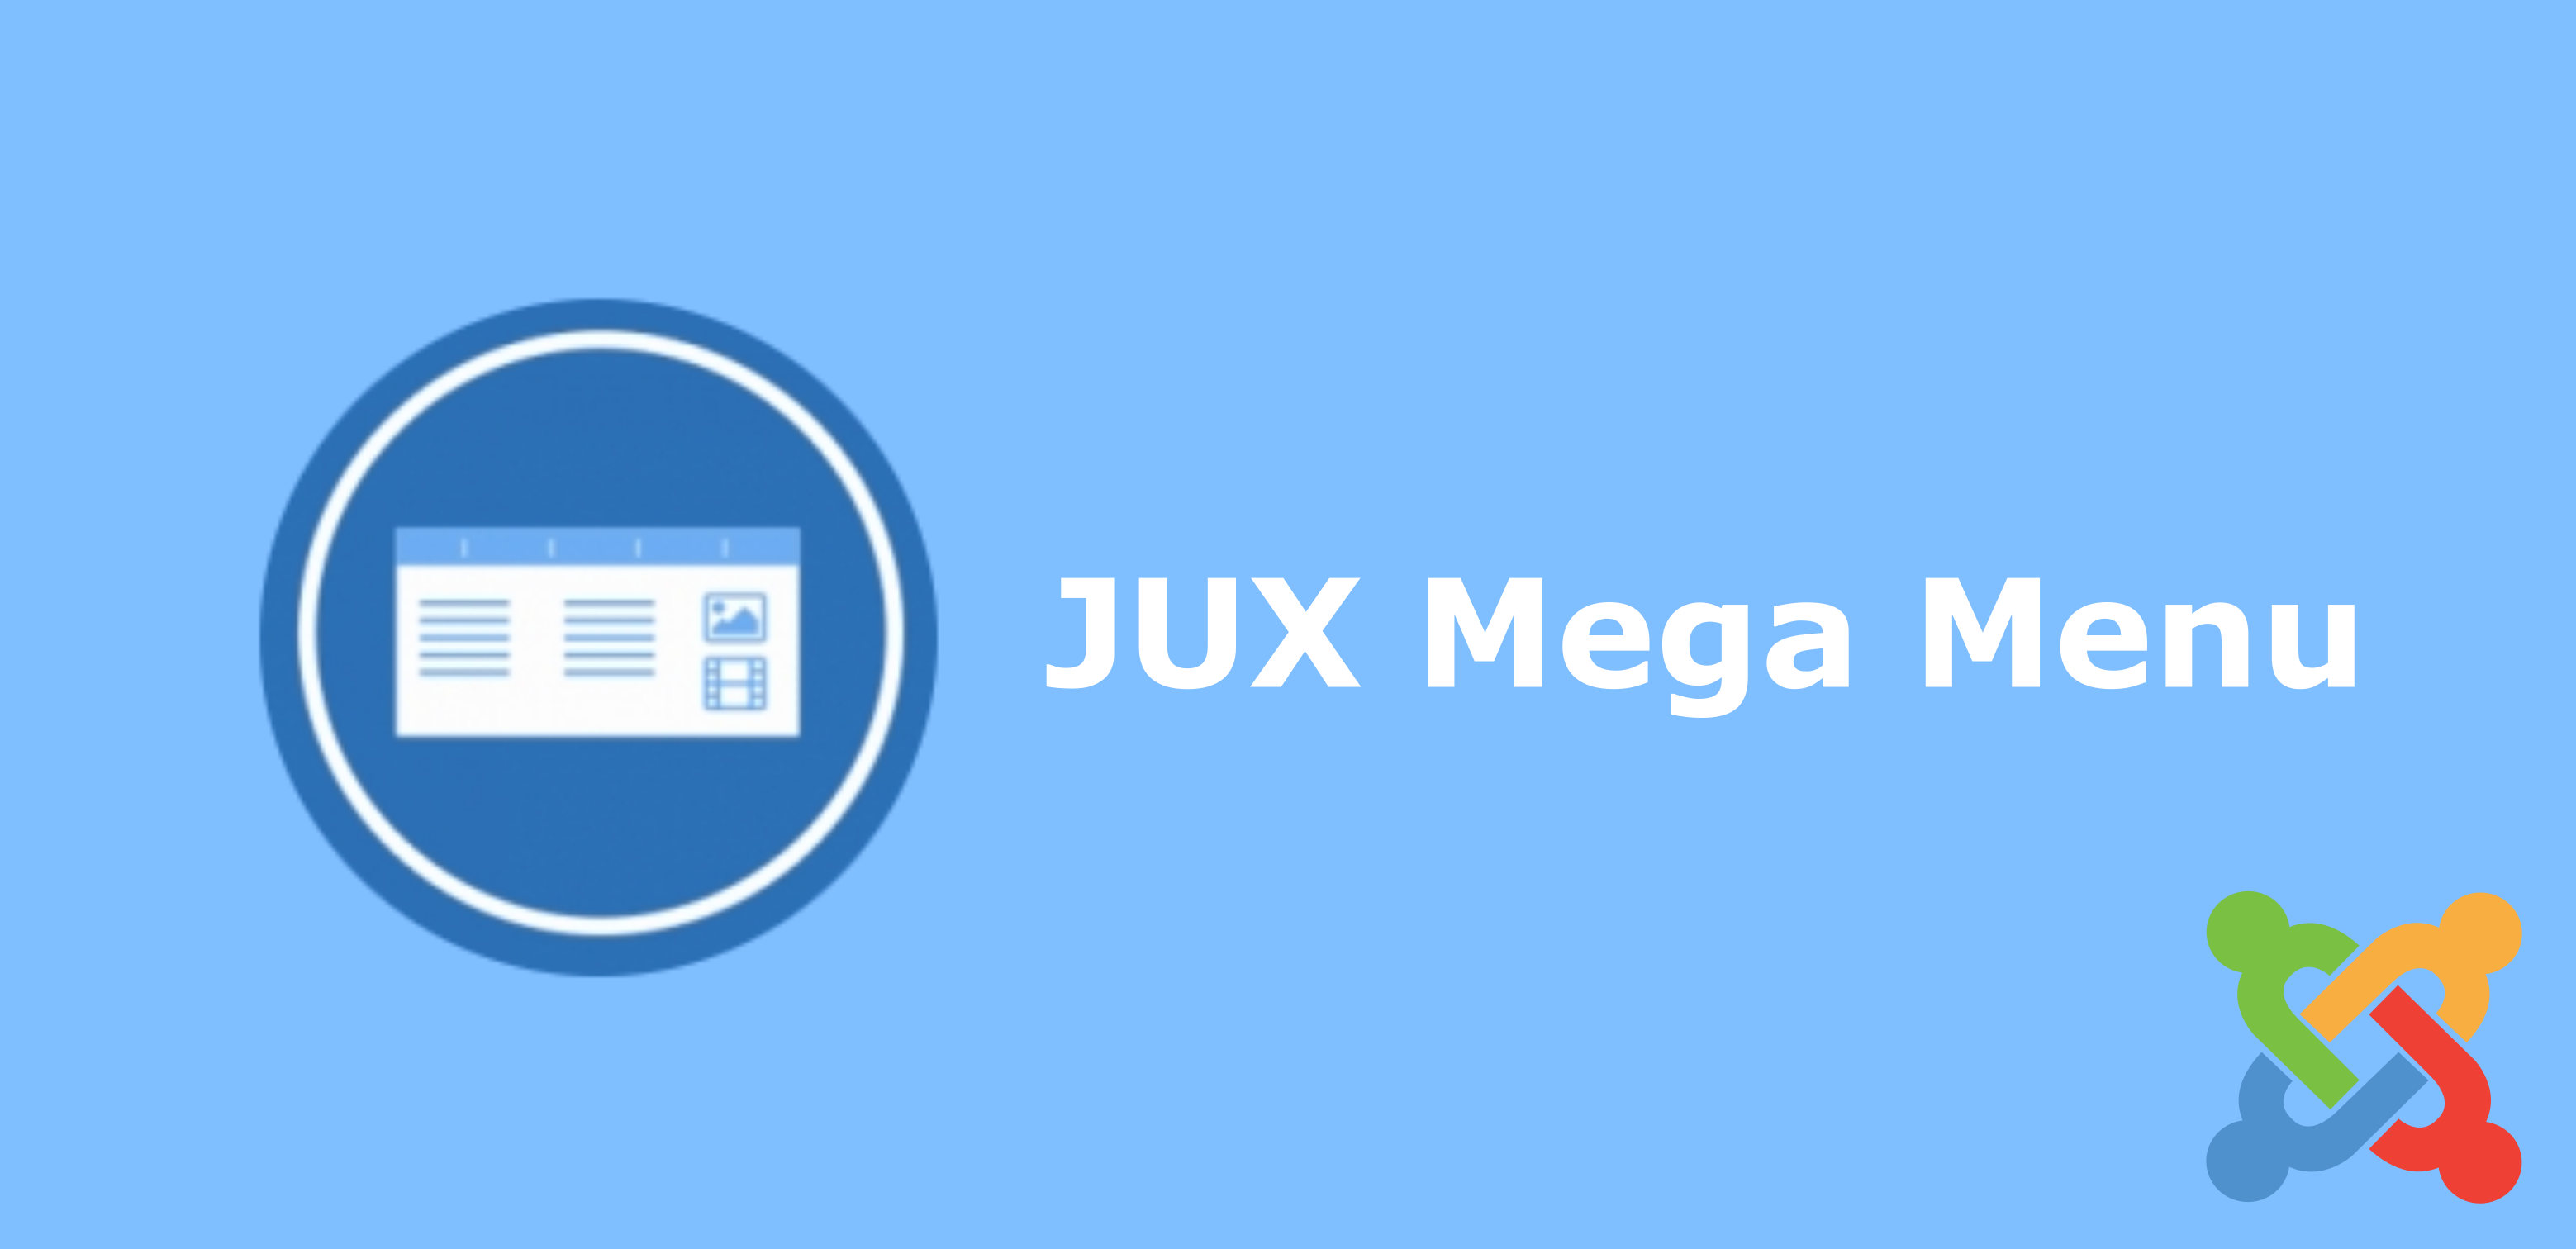 Joomla Menu Extension jux mega menu